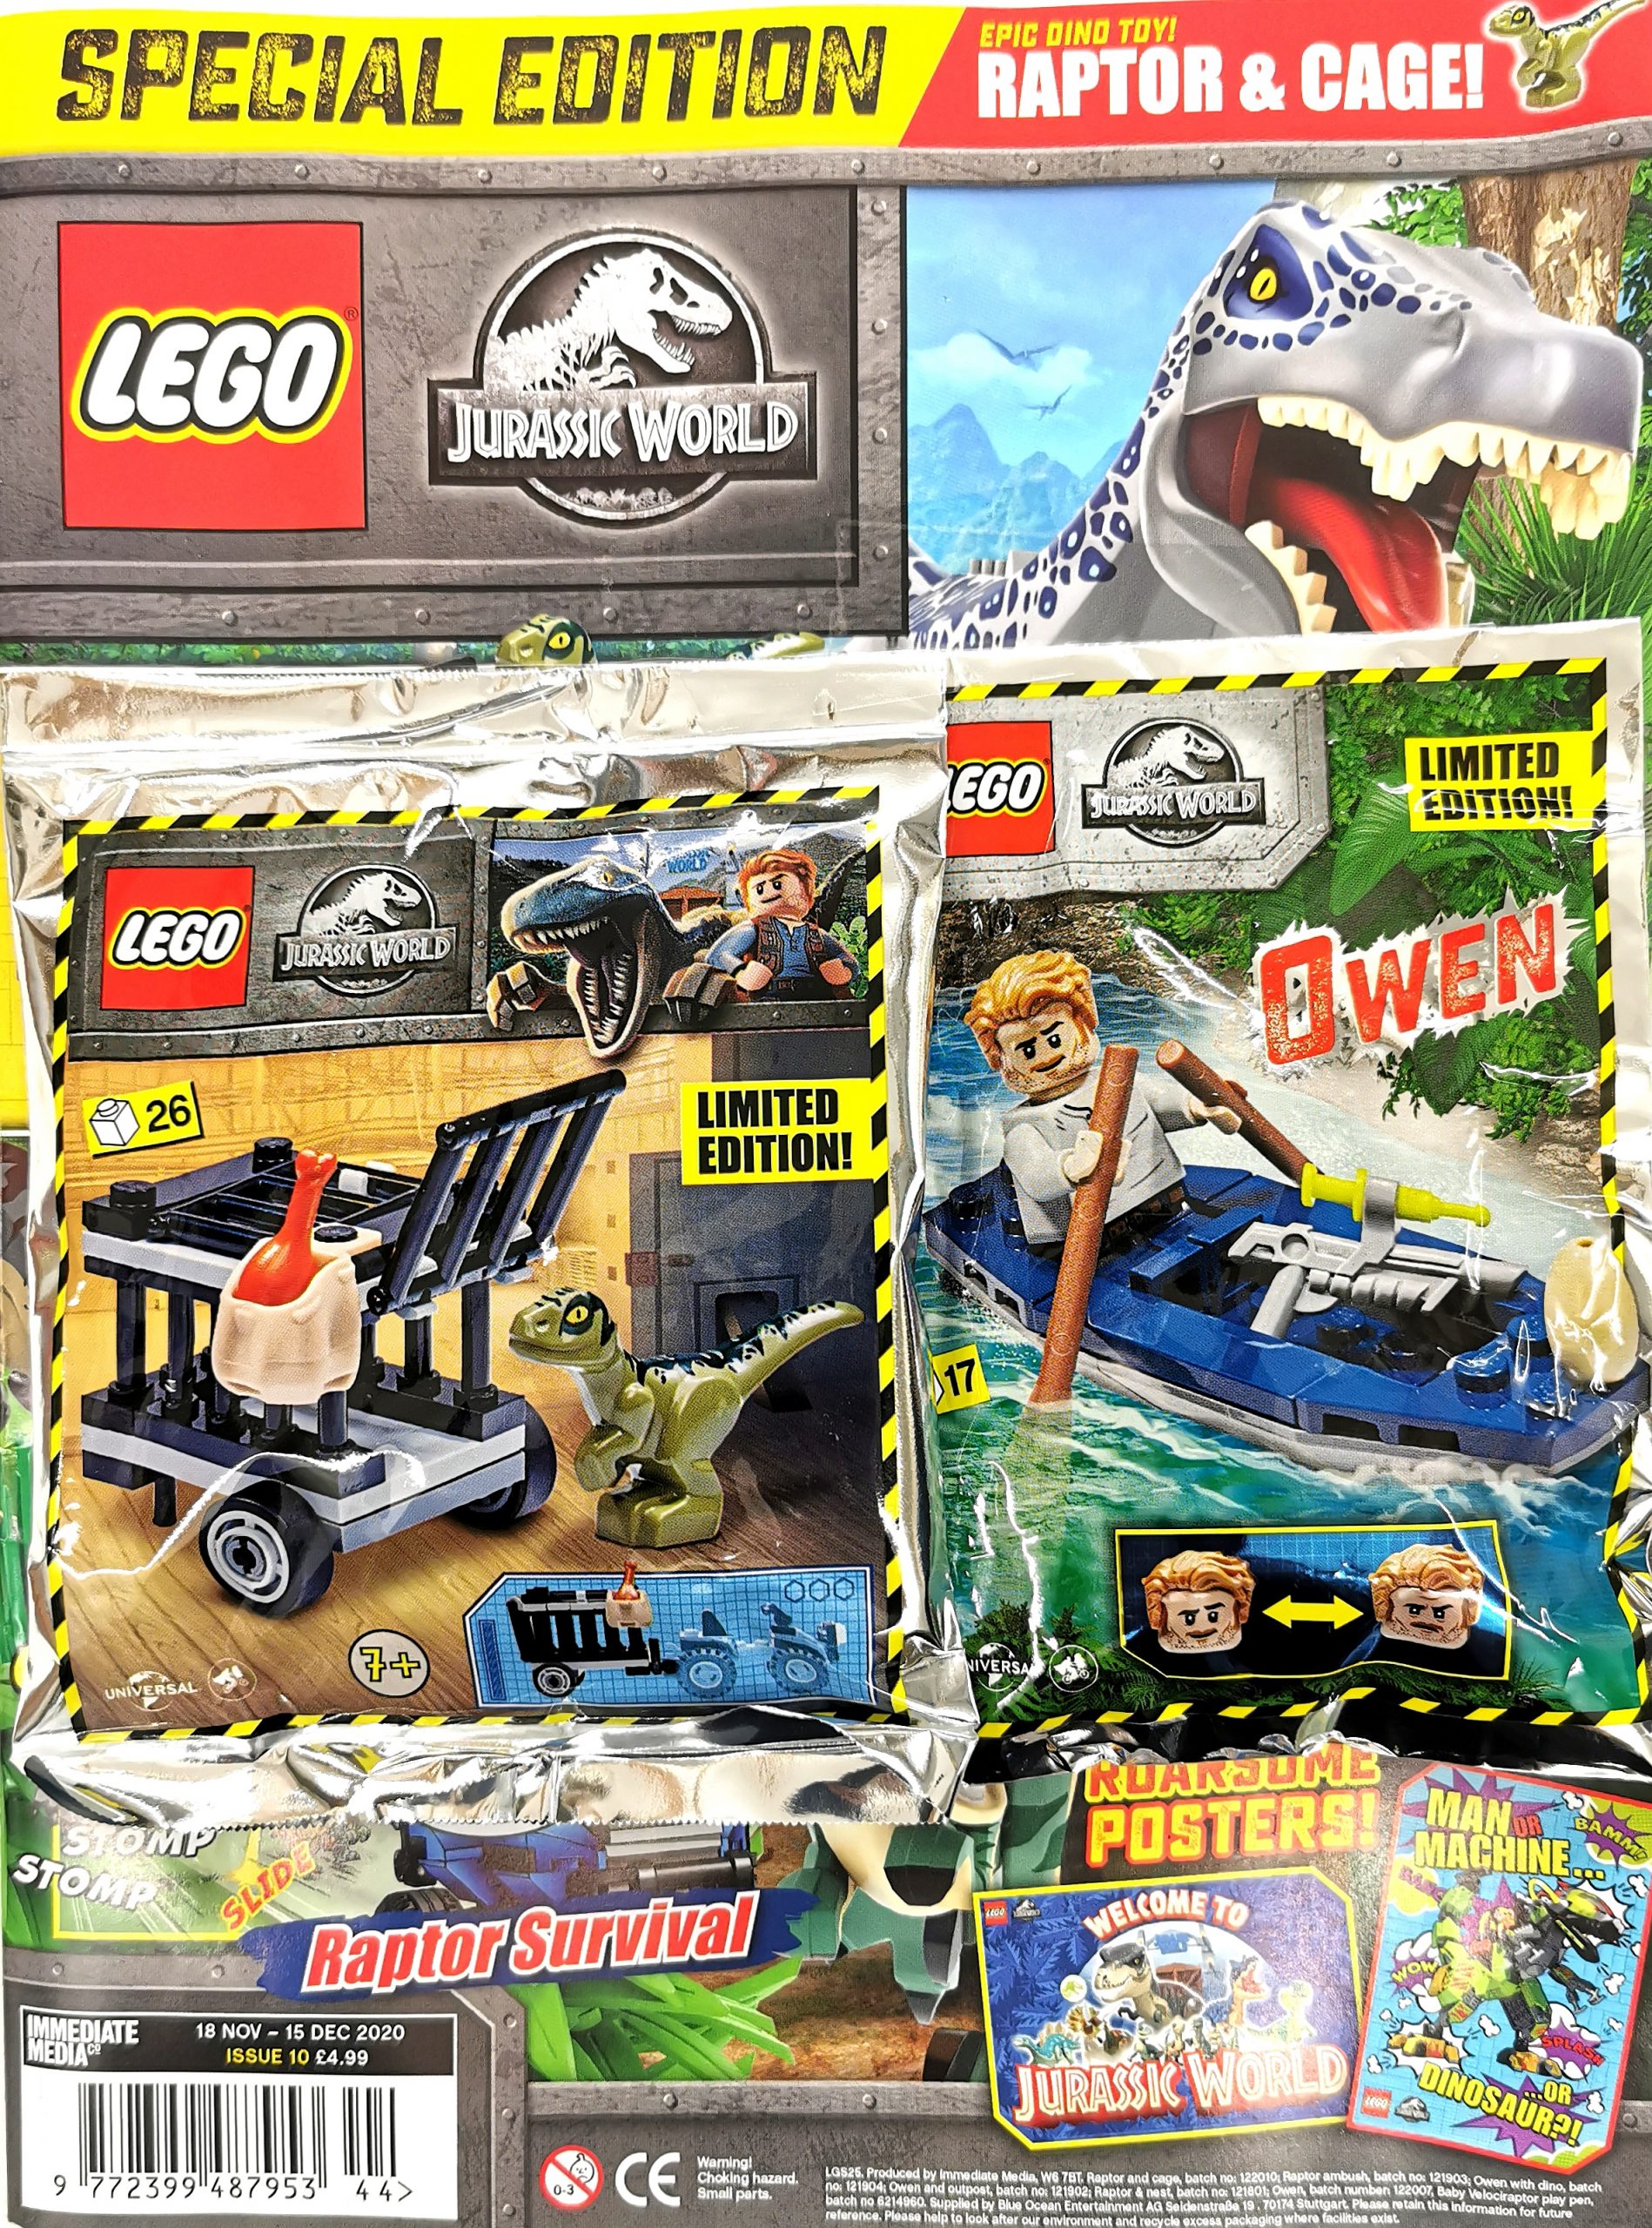 Baby Raptor And Nest Foil Pack 121801 LEGO Jurassic Park Jurassic World New 